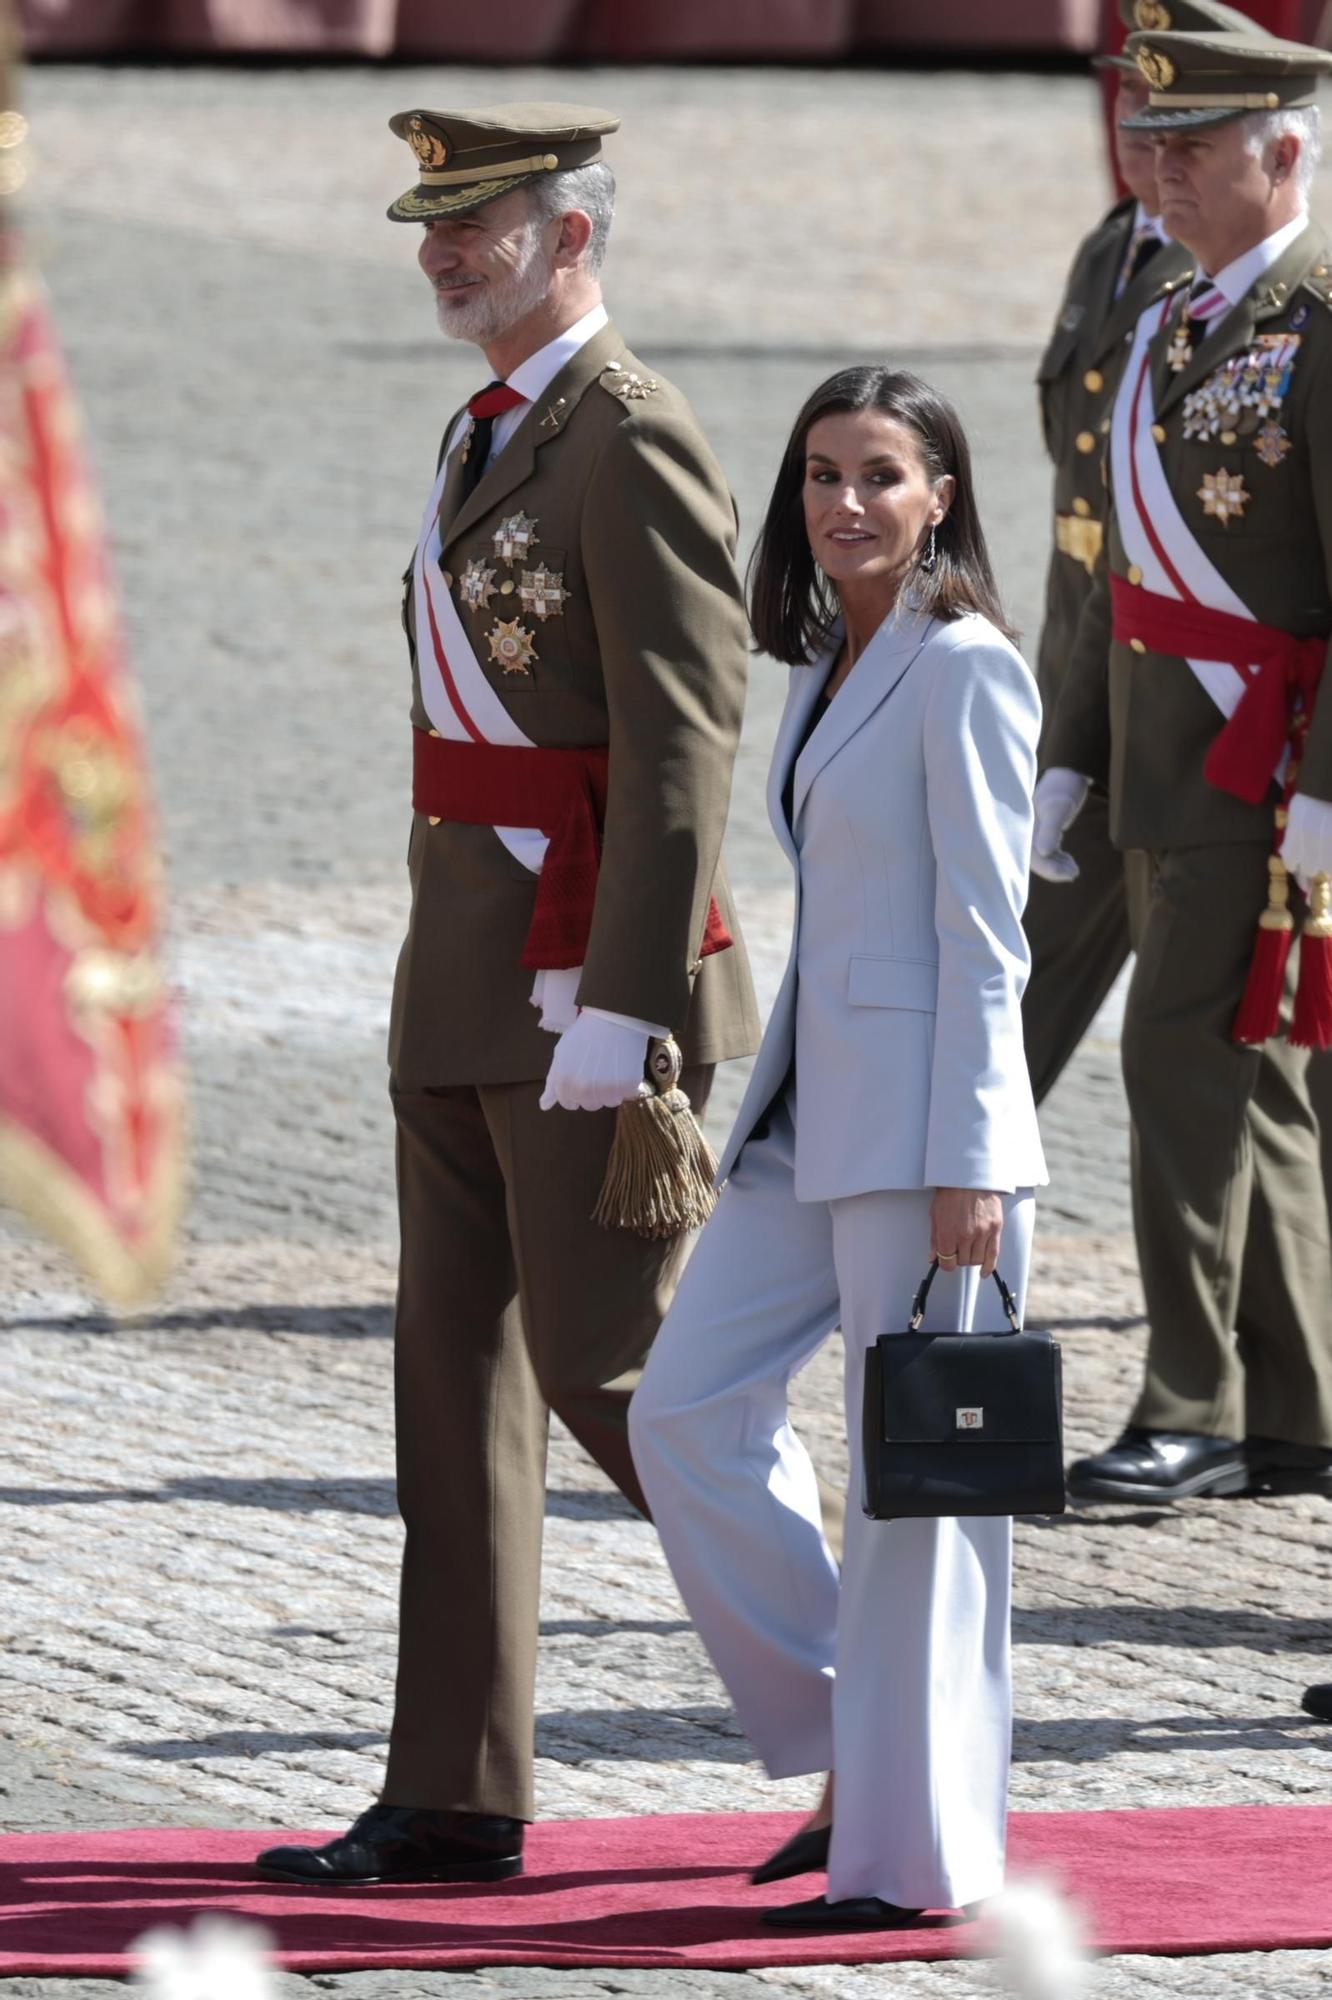 La reina Letizia se mantiene fiel a su estilo en el aniversario de la Jura de Bandera del rey Felipe